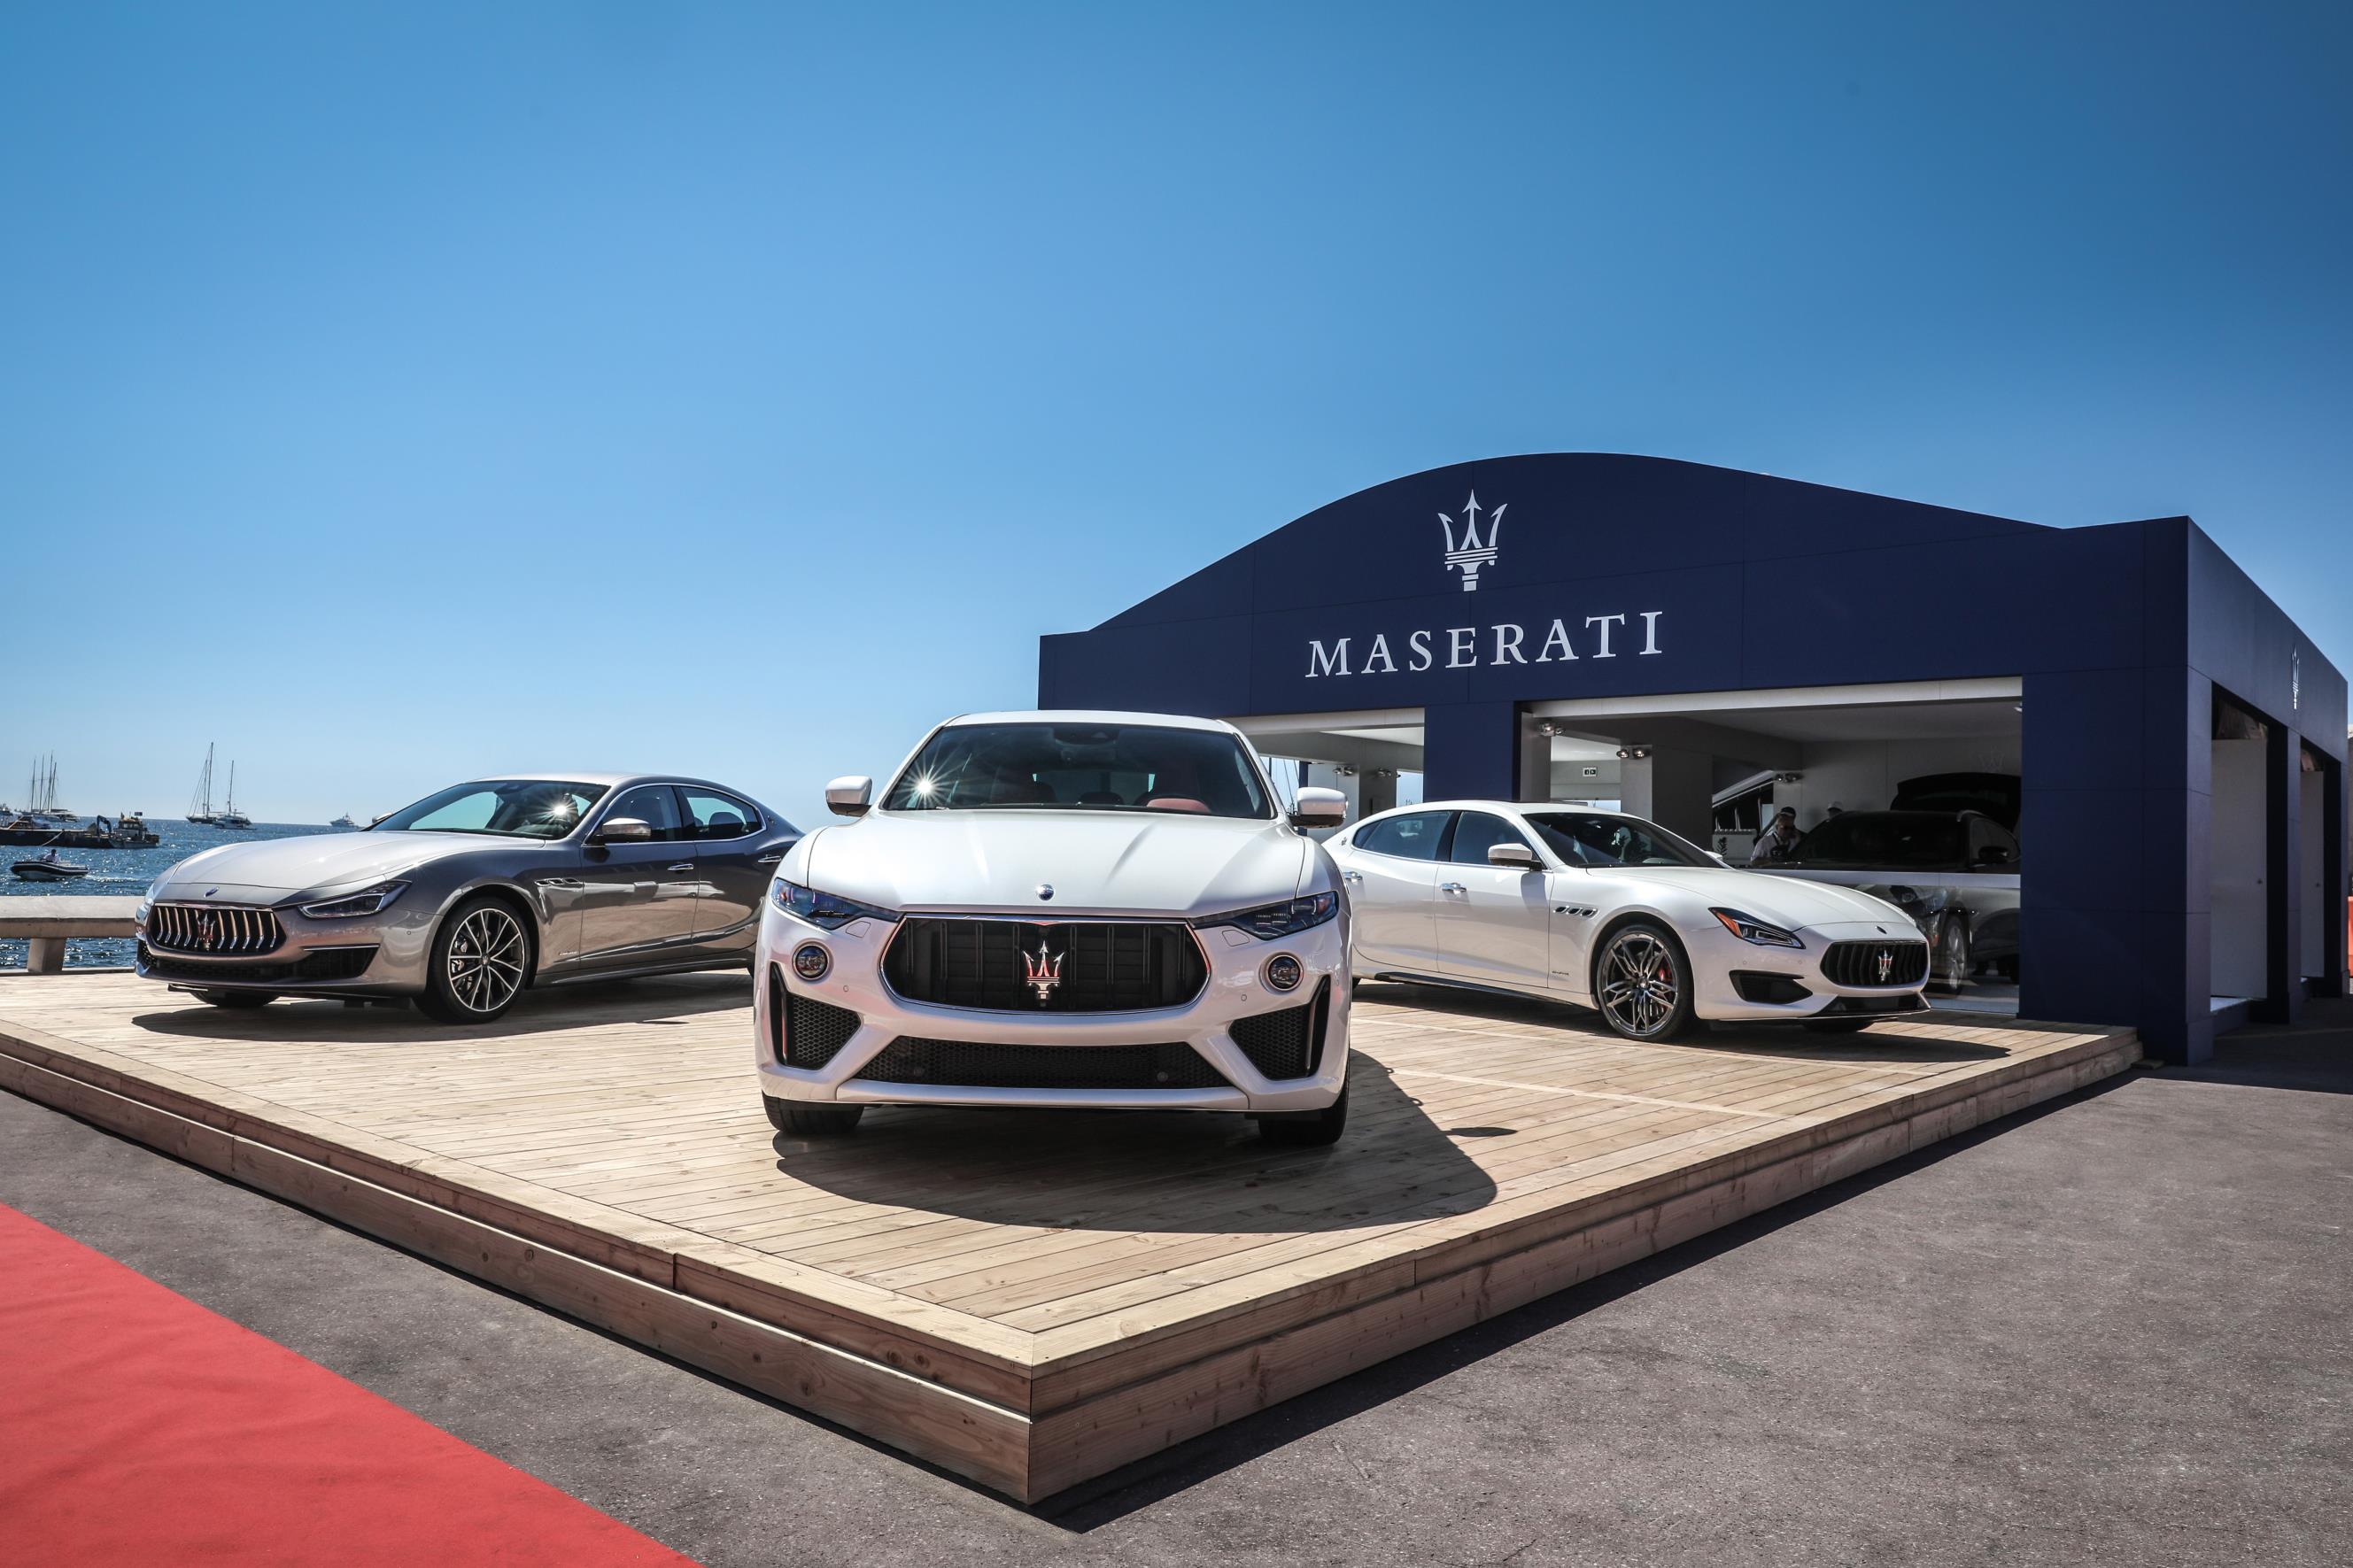 Maserati actuará como coche oficial en la 41ª edición del Cannes Yachting Festival